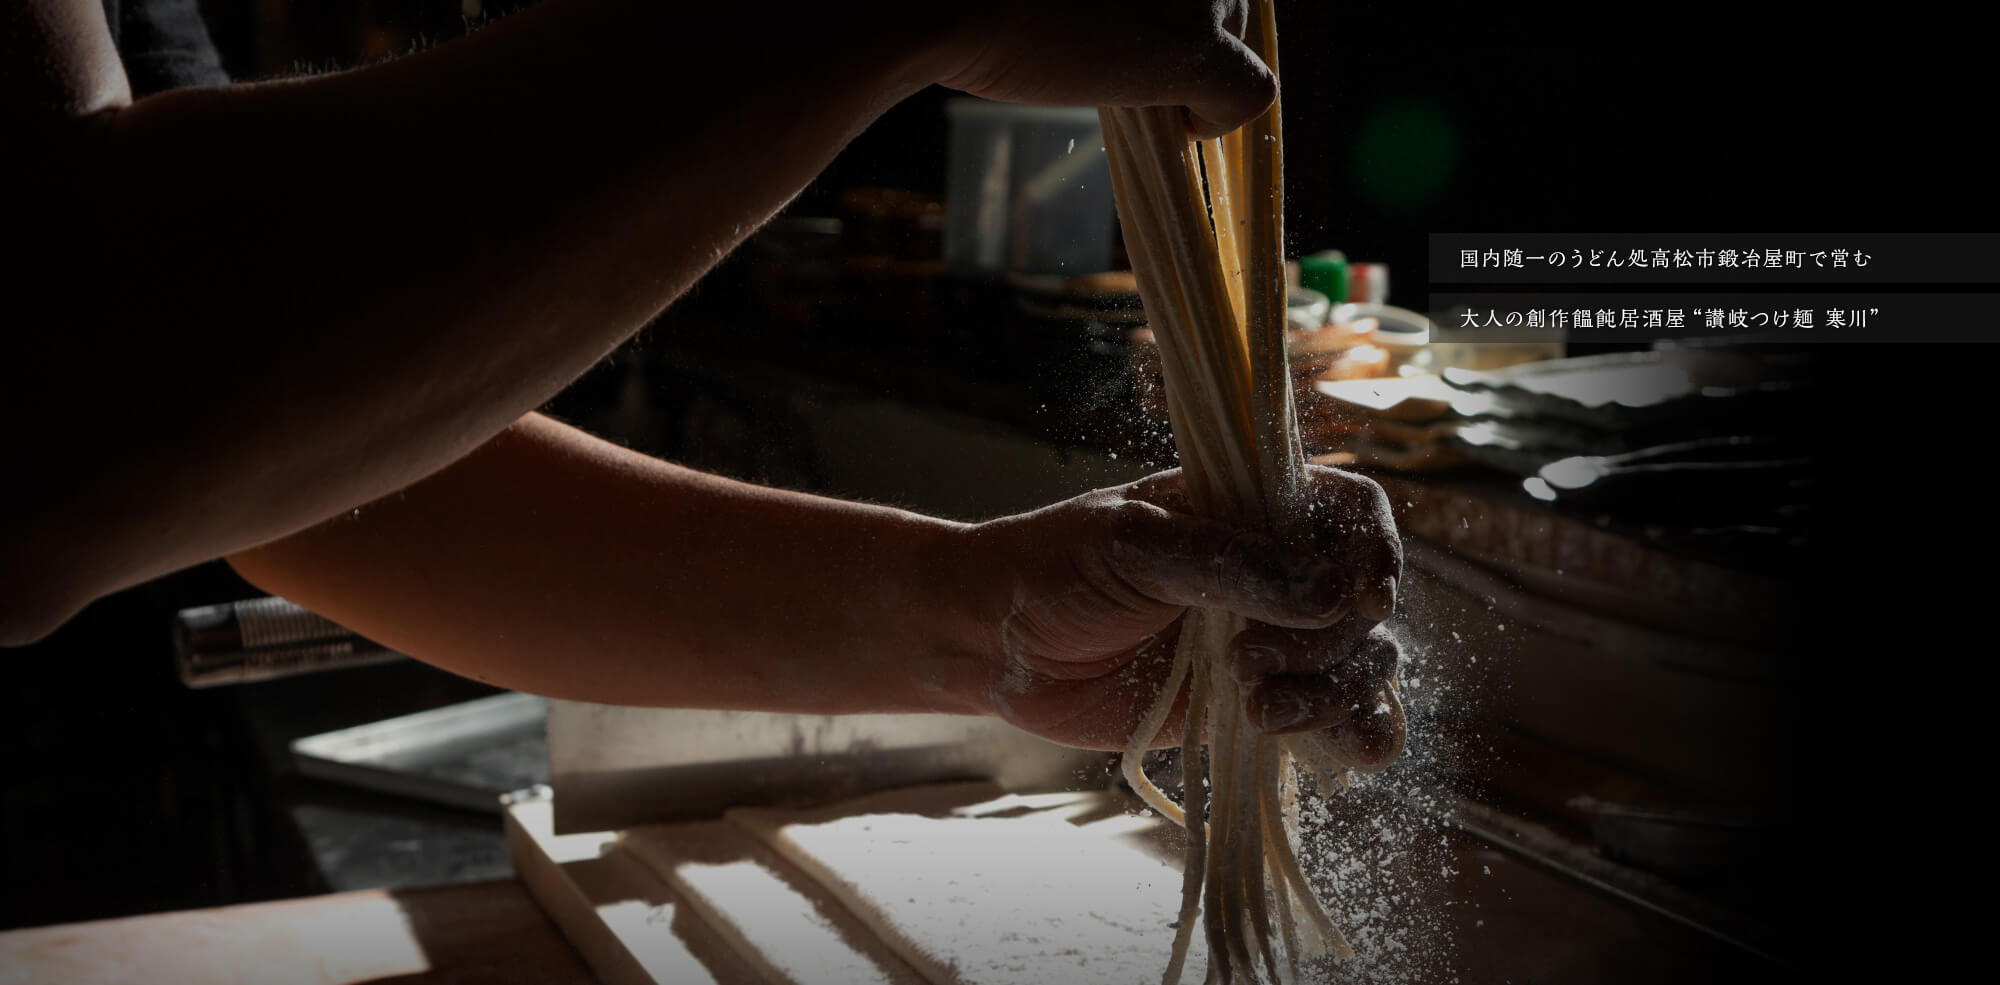 国内随一のうどん処高松市鍛冶屋町で営む大人の創作饂飩居酒屋“讃岐つけ麺 寒川”